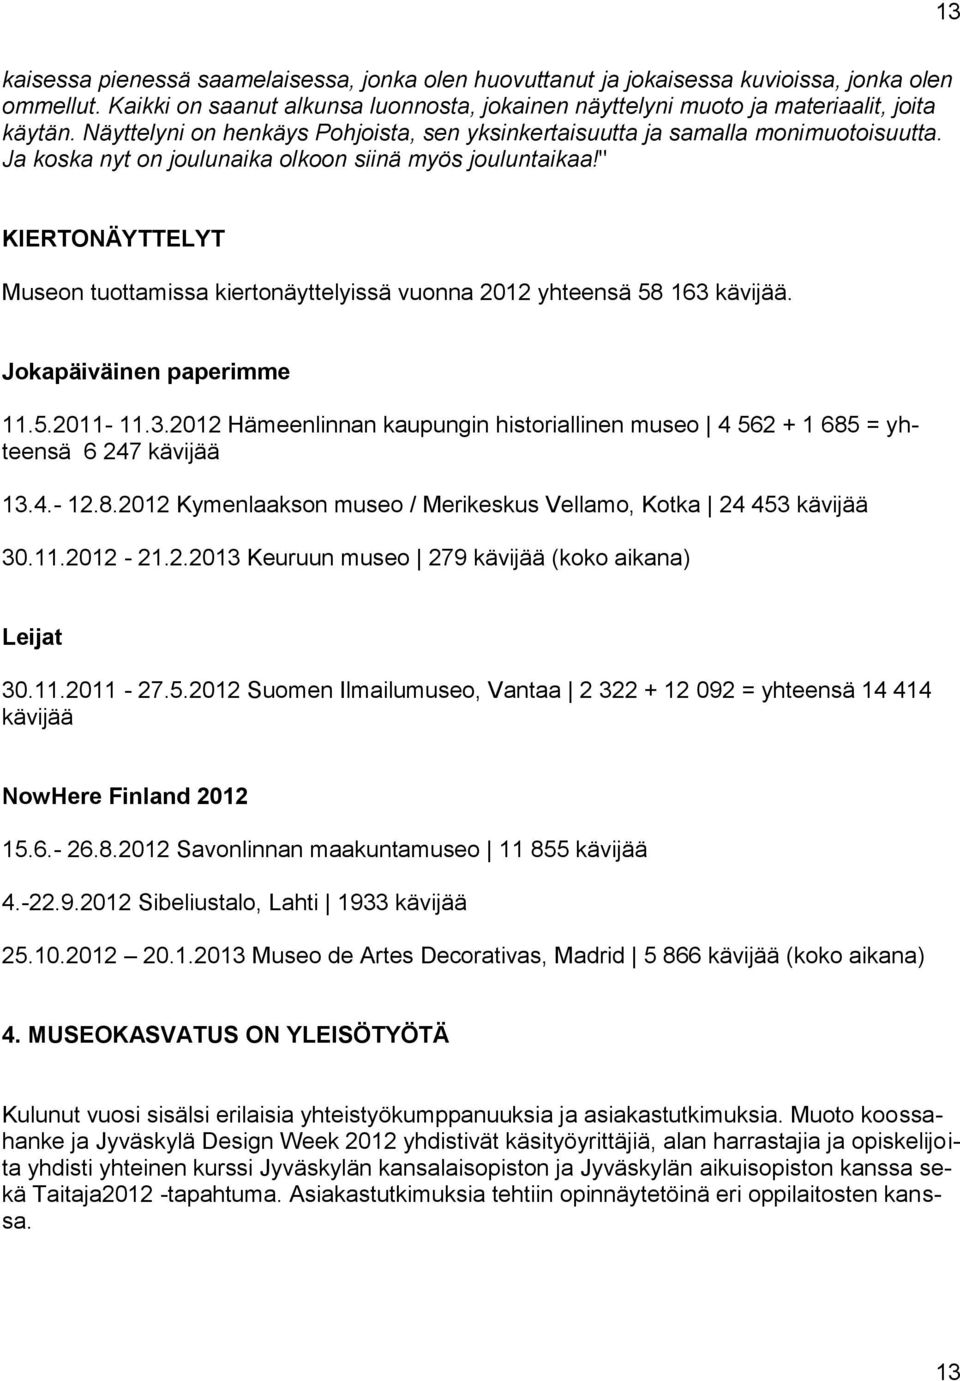 " KIERTONÄYTTELYT Museon tuottamissa kiertonäyttelyissä vuonna 2012 yhteensä 58 163 kävijää. Jokapäiväinen paperimme 11.5.2011-11.3.2012 Hämeenlinnan kaupungin historiallinen museo 4 562 + 1 685 = yhteensä 6 247 kävijää 13.